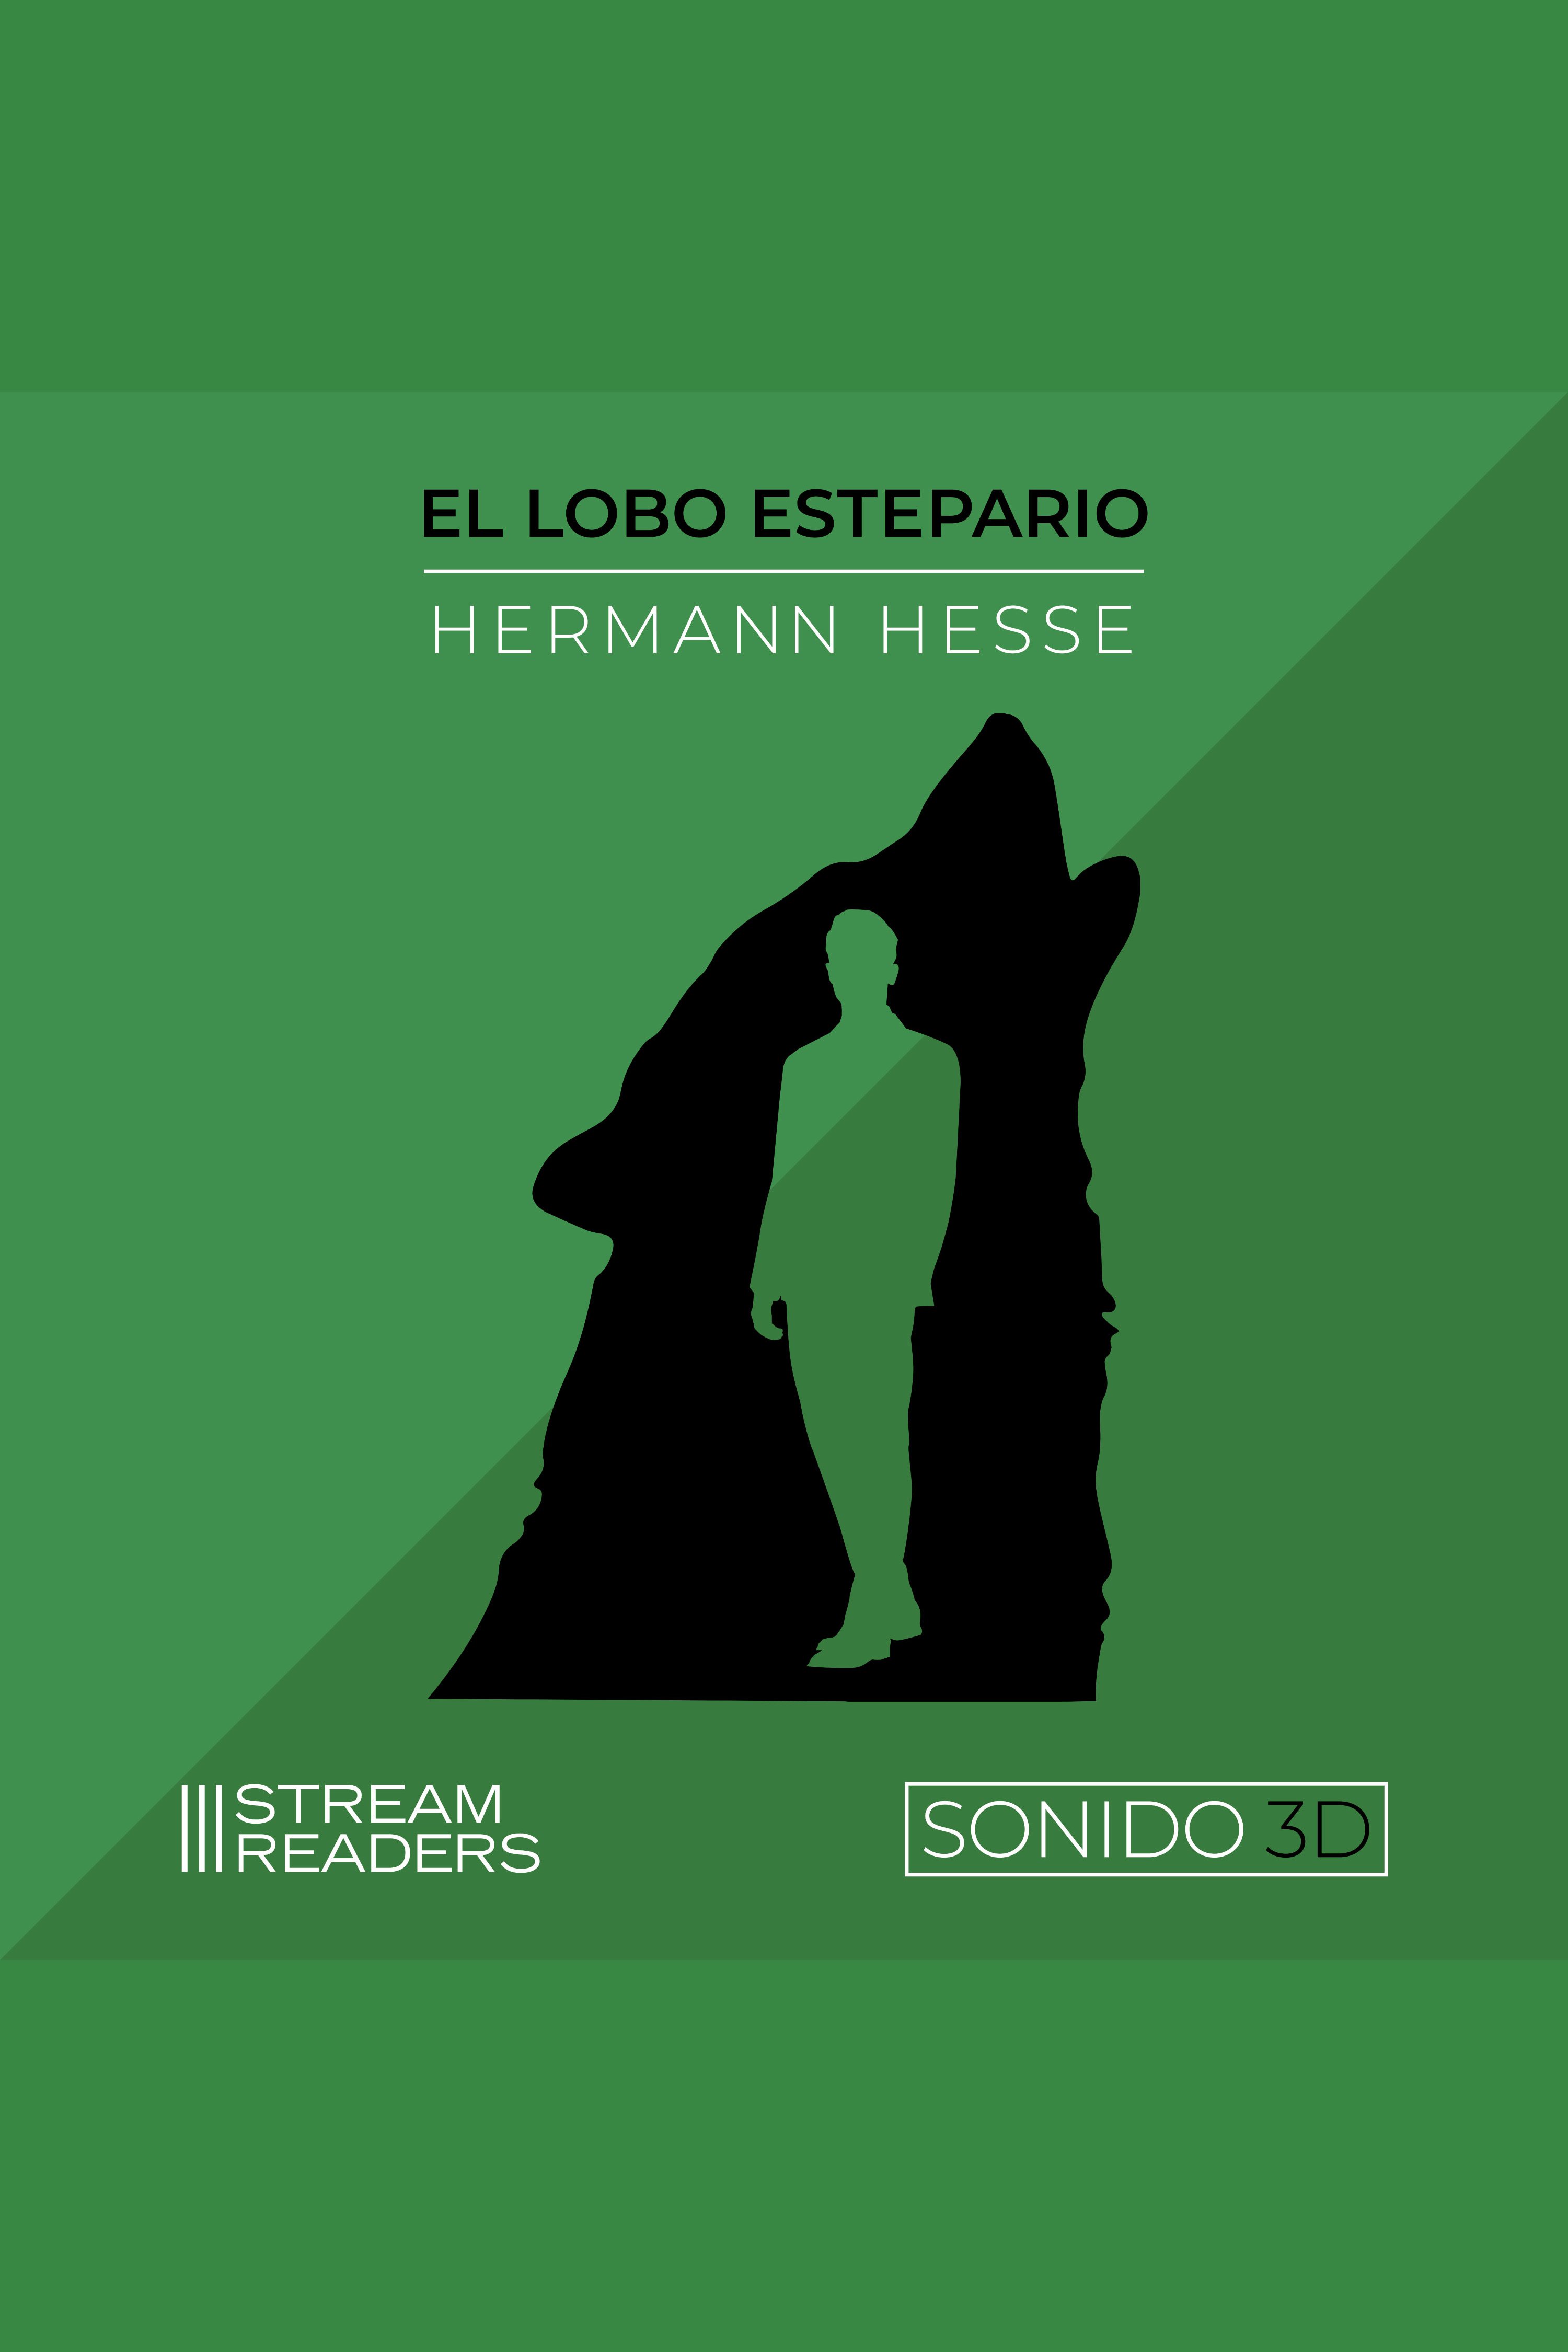 El Lobo Estepario Música original y sonido 3D cover image